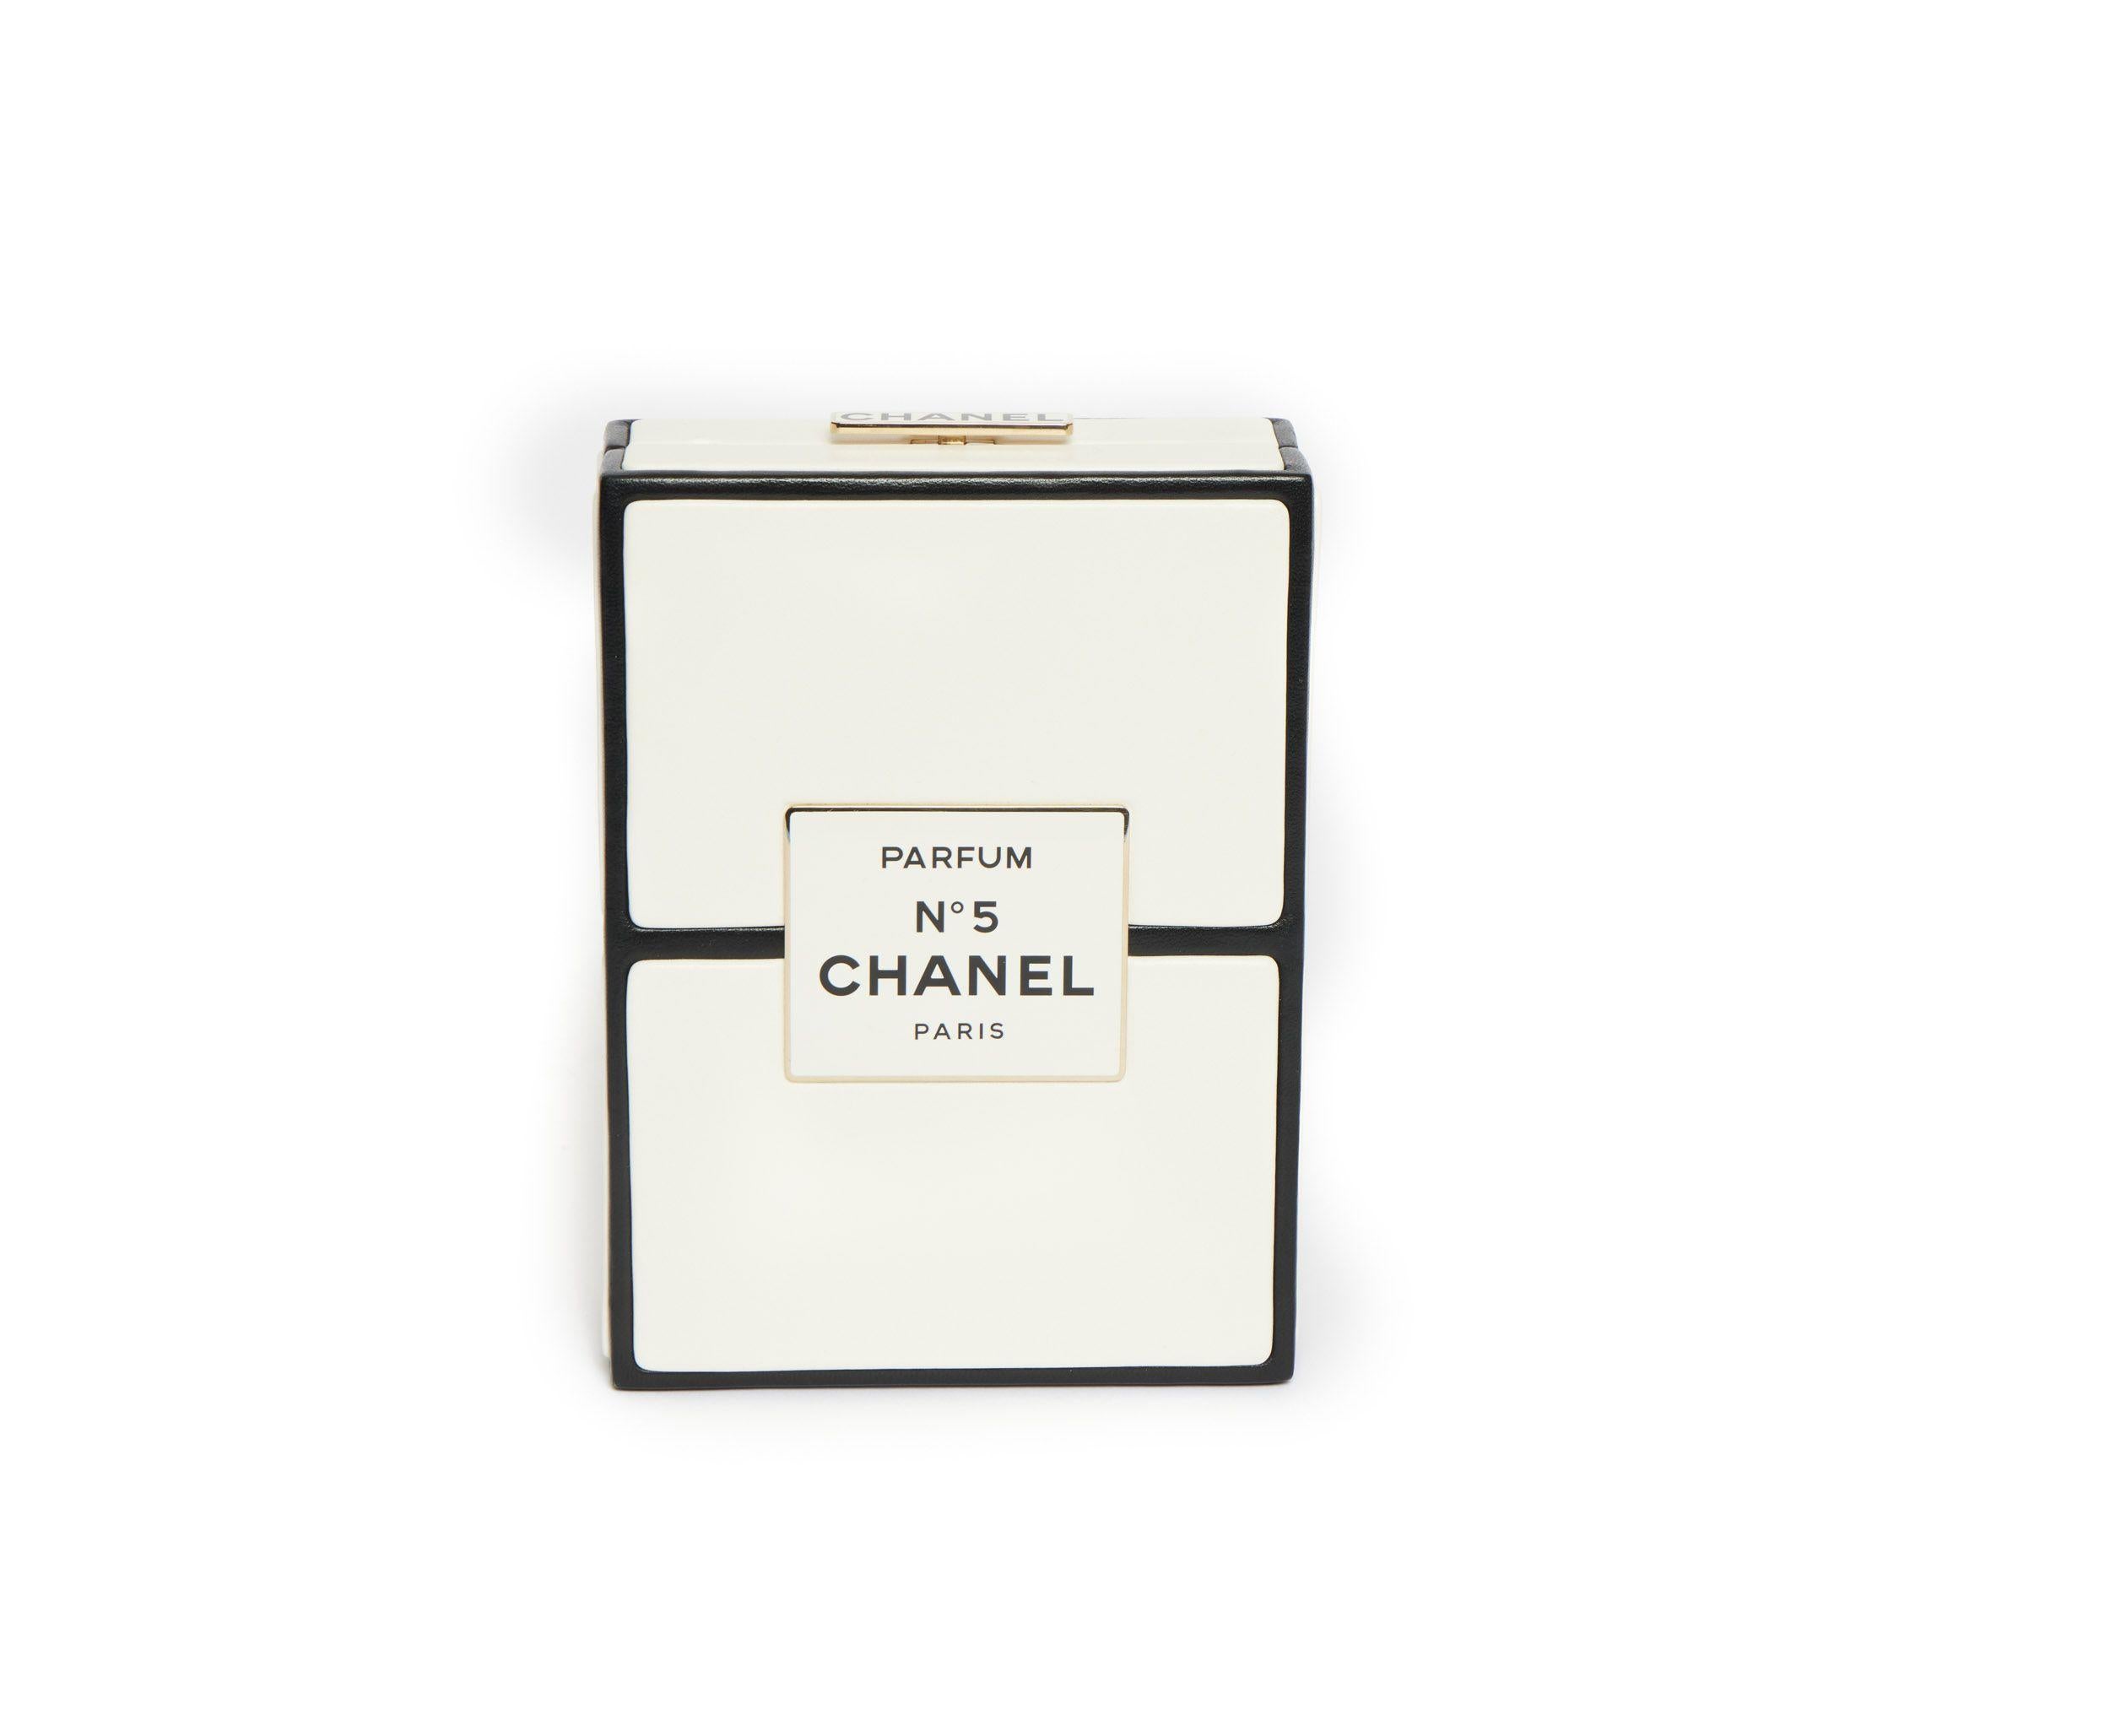 Beige Chanel Parfum No5 Box New